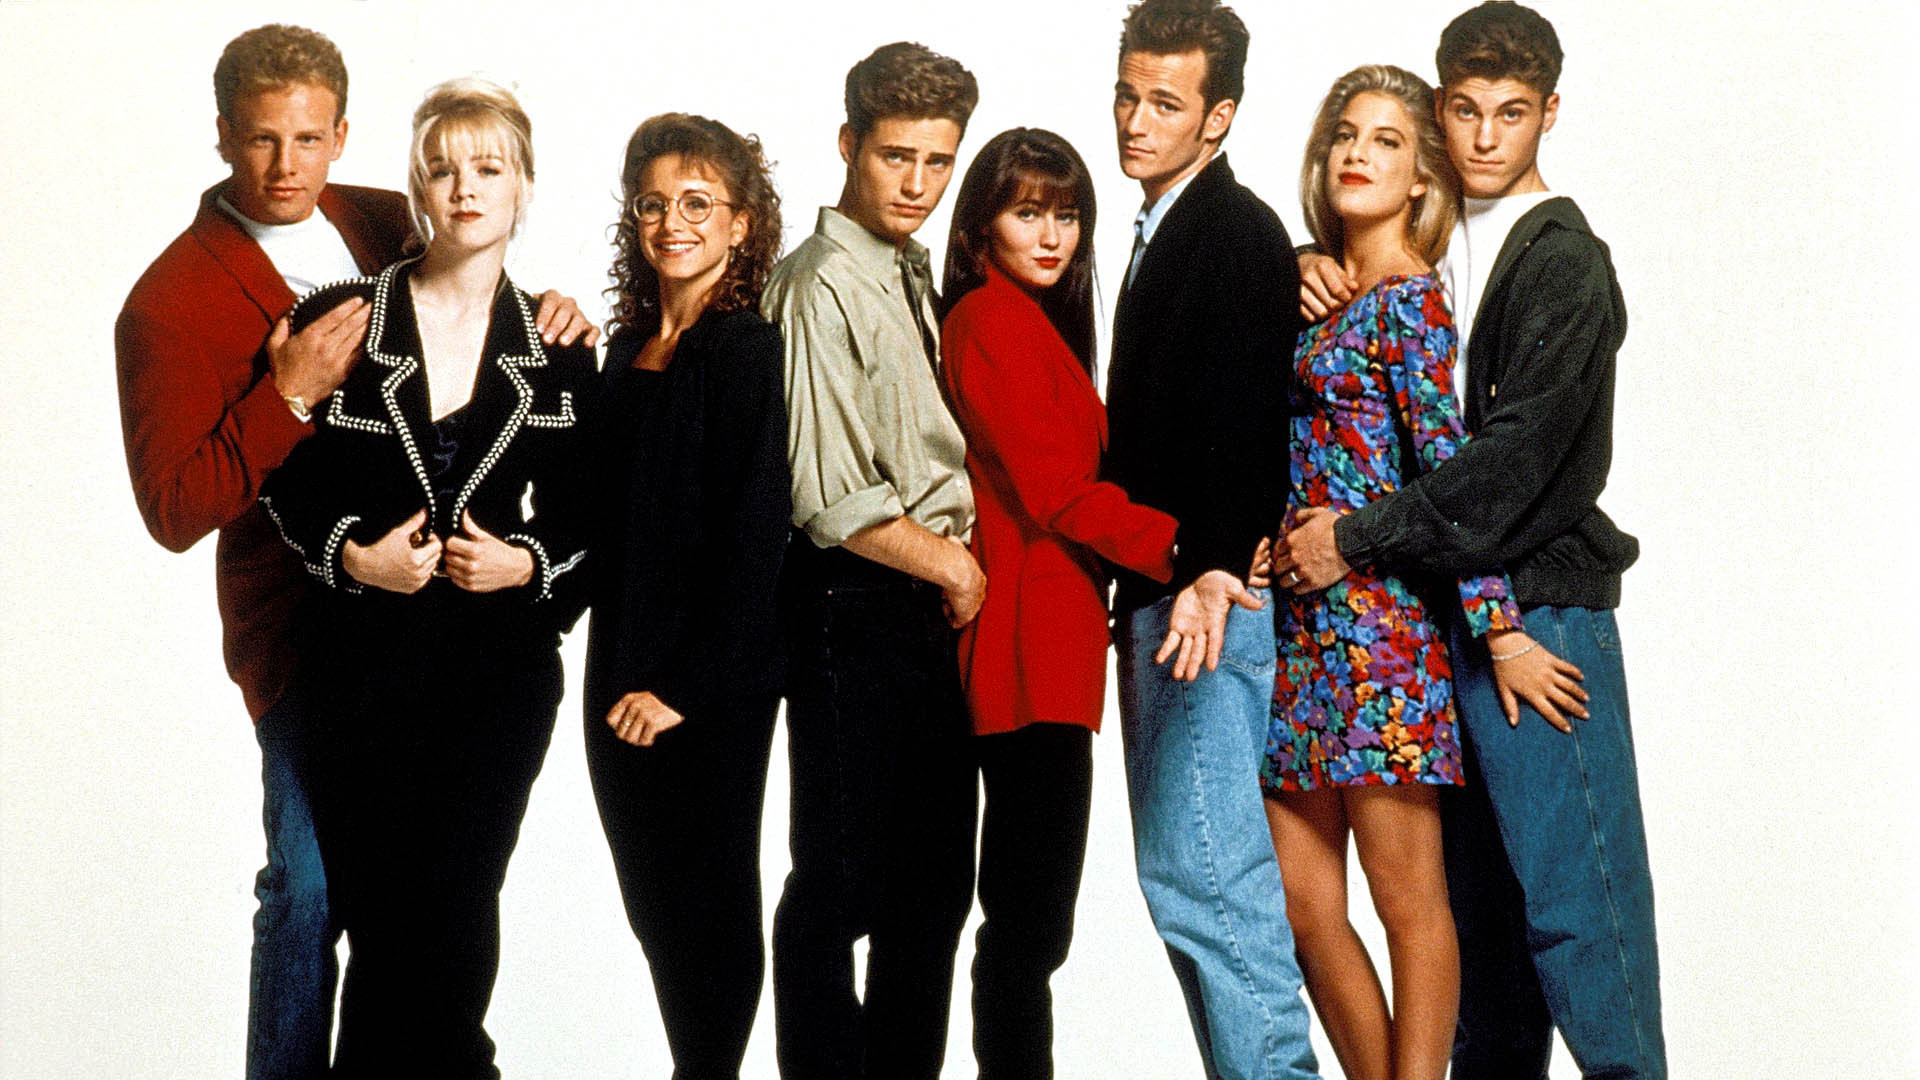 Беверли-Хиллз 90210 – 4 сезон 8 серия «Сегодня, как 20 лет назад…» / Beverly Hills, 90210